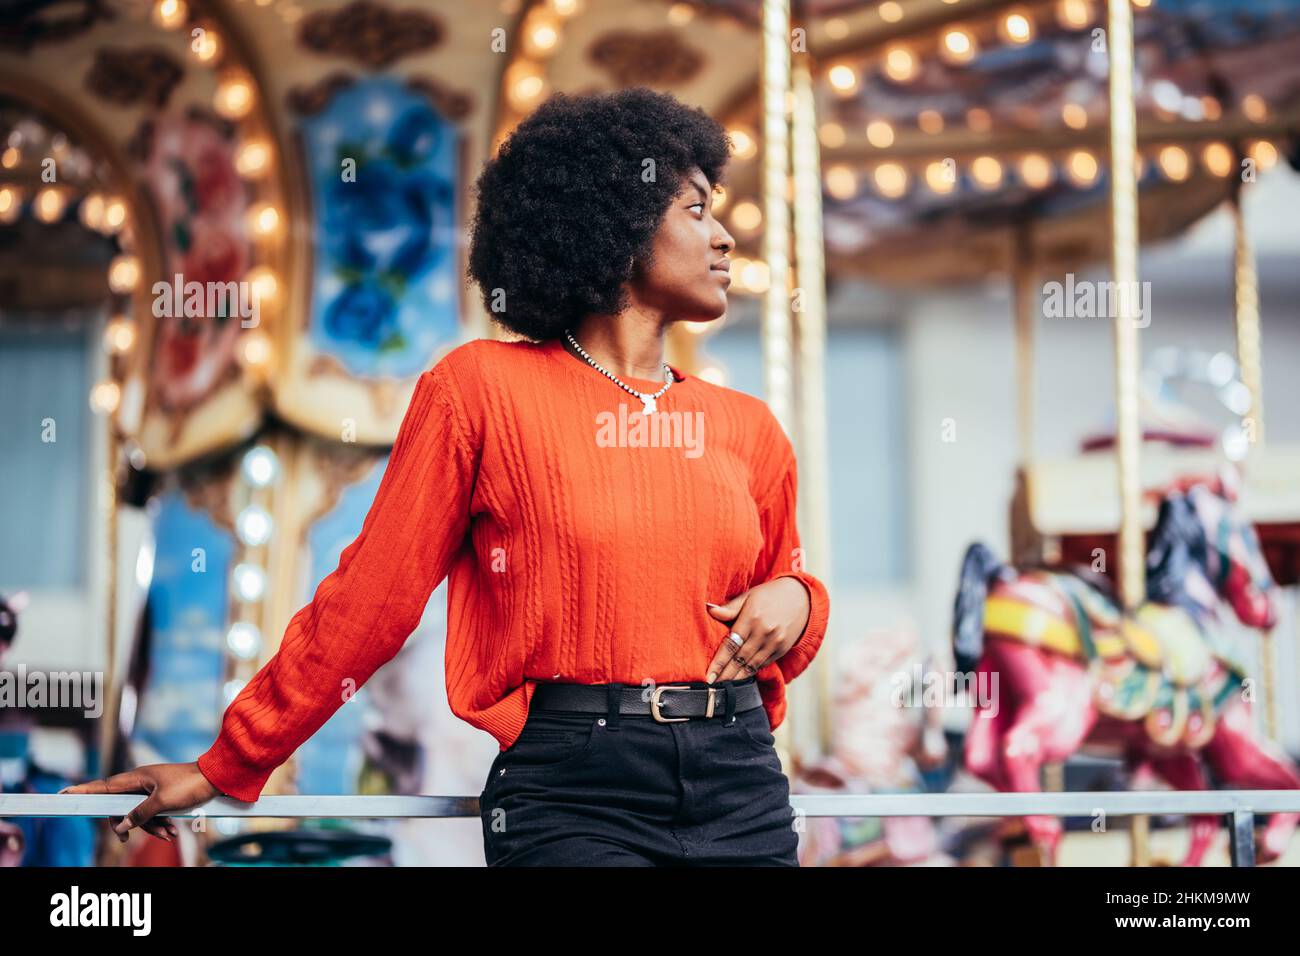 Nachdenkliche junge schwarze Frau mit afro-Frisur und rotem Pullover neben einem Karussell auf der Straße Stockfoto